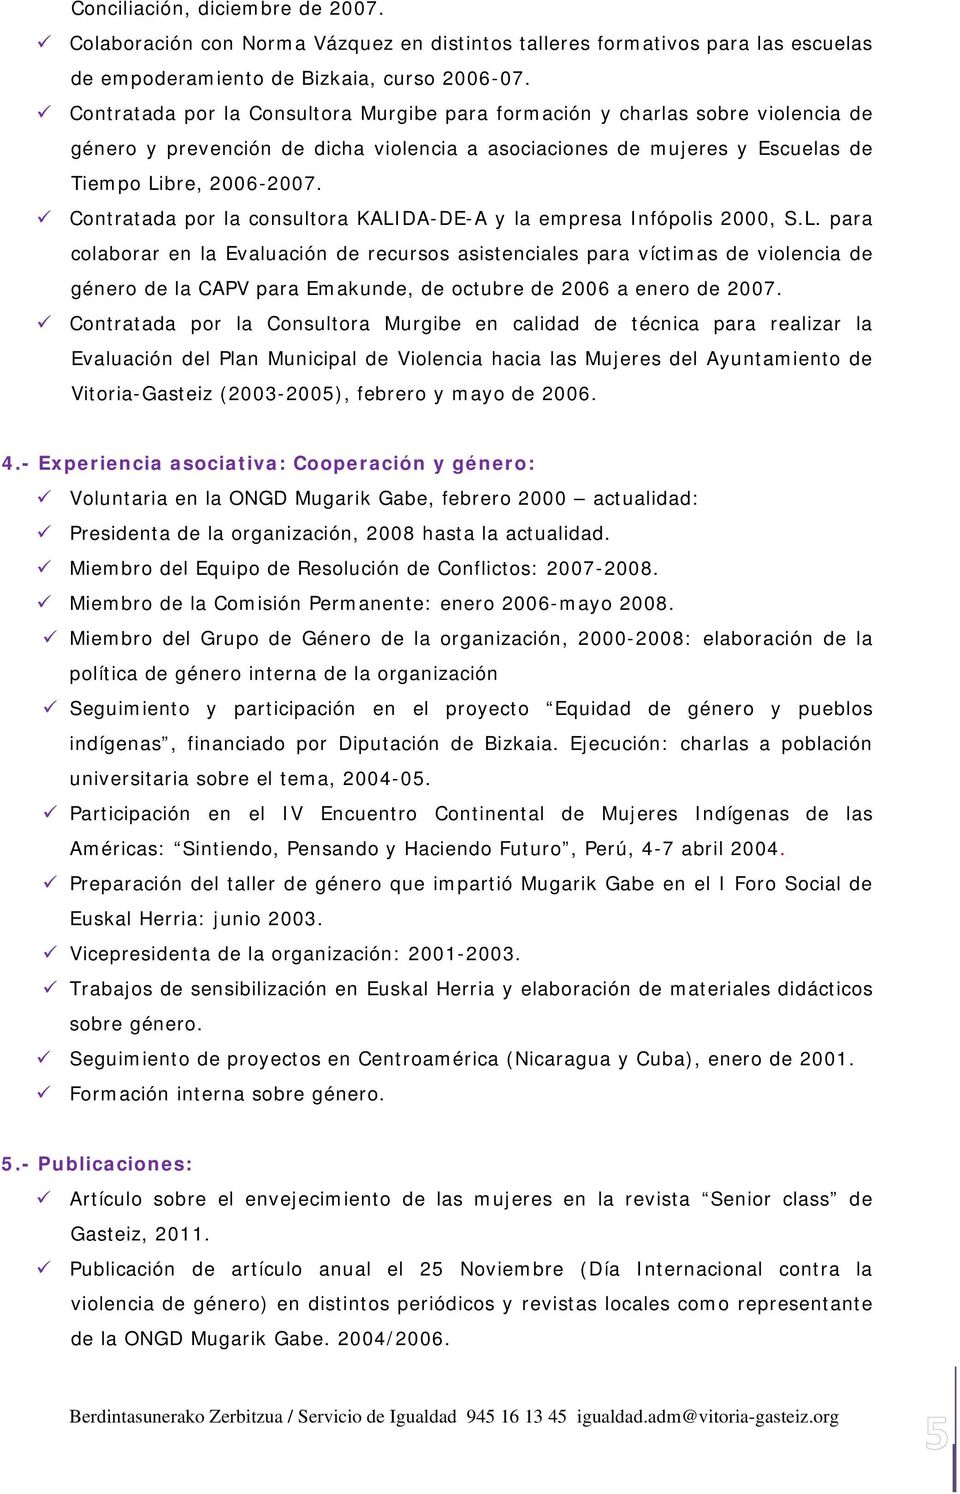 Contratada por la consultora KALIDA-DE-A y la empresa Infópolis 2000, S.L. para colaborar en la Evaluación de recursos asistenciales para víctimas de violencia de género de la CAPV para Emakunde, de octubre de 2006 a enero de 2007.